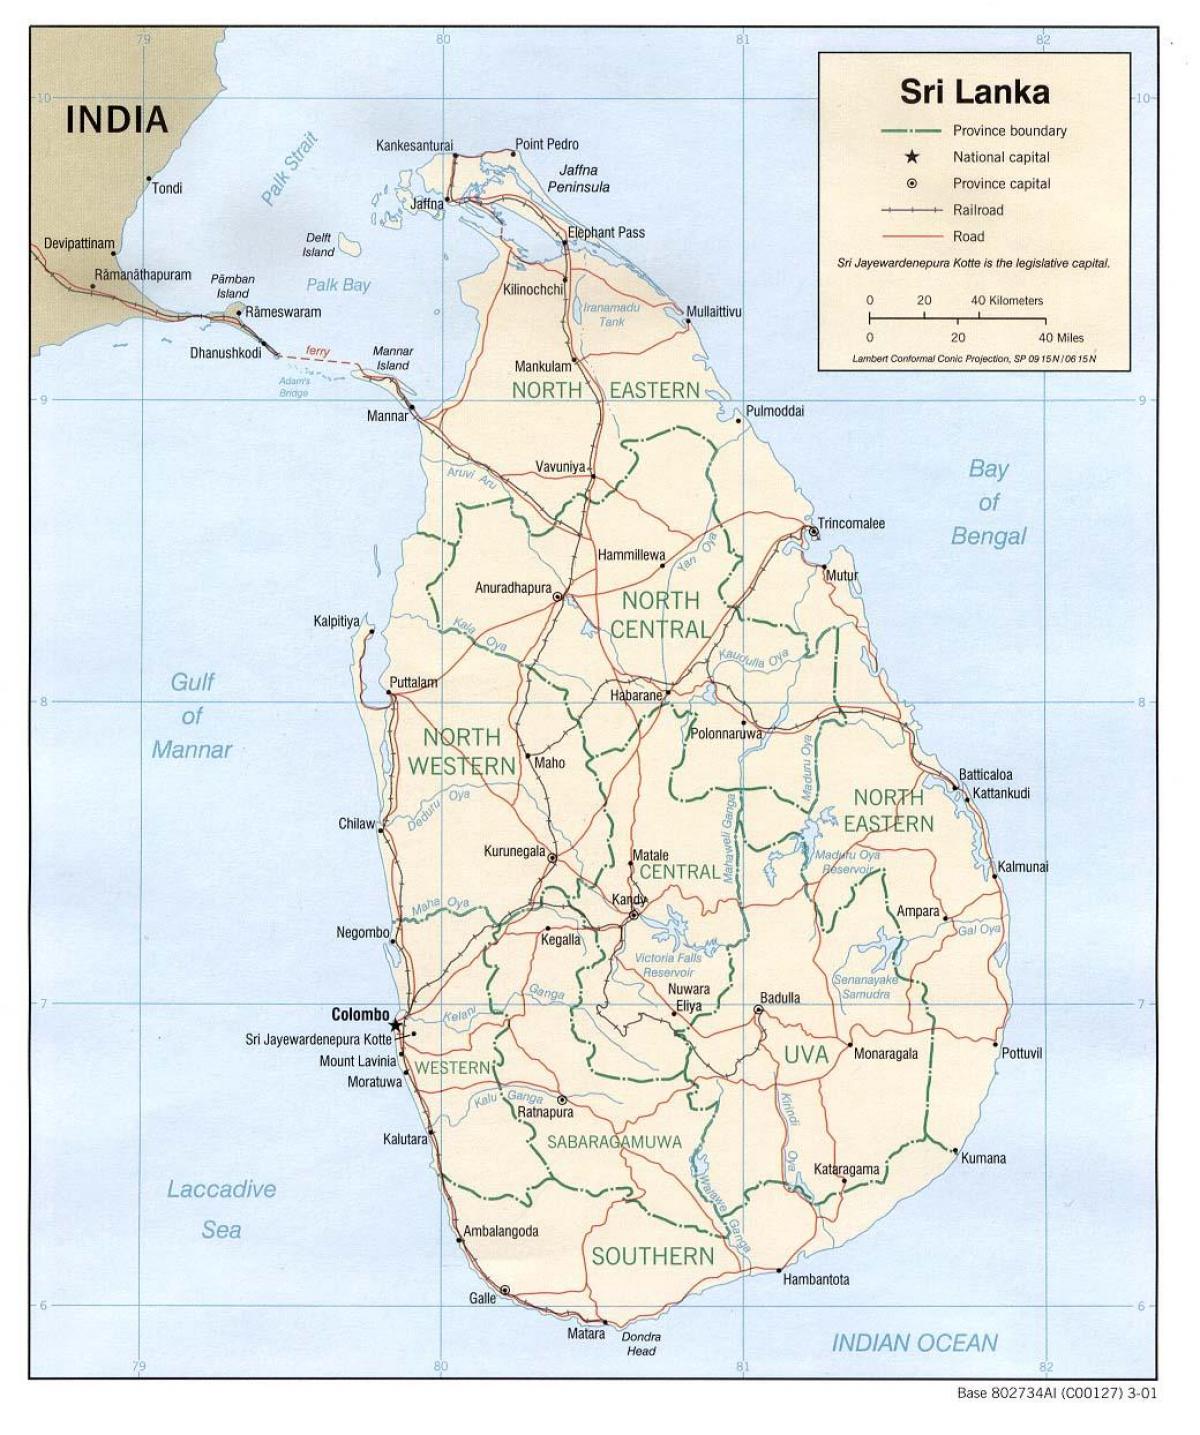 श्रीलंका बस मानचित्र